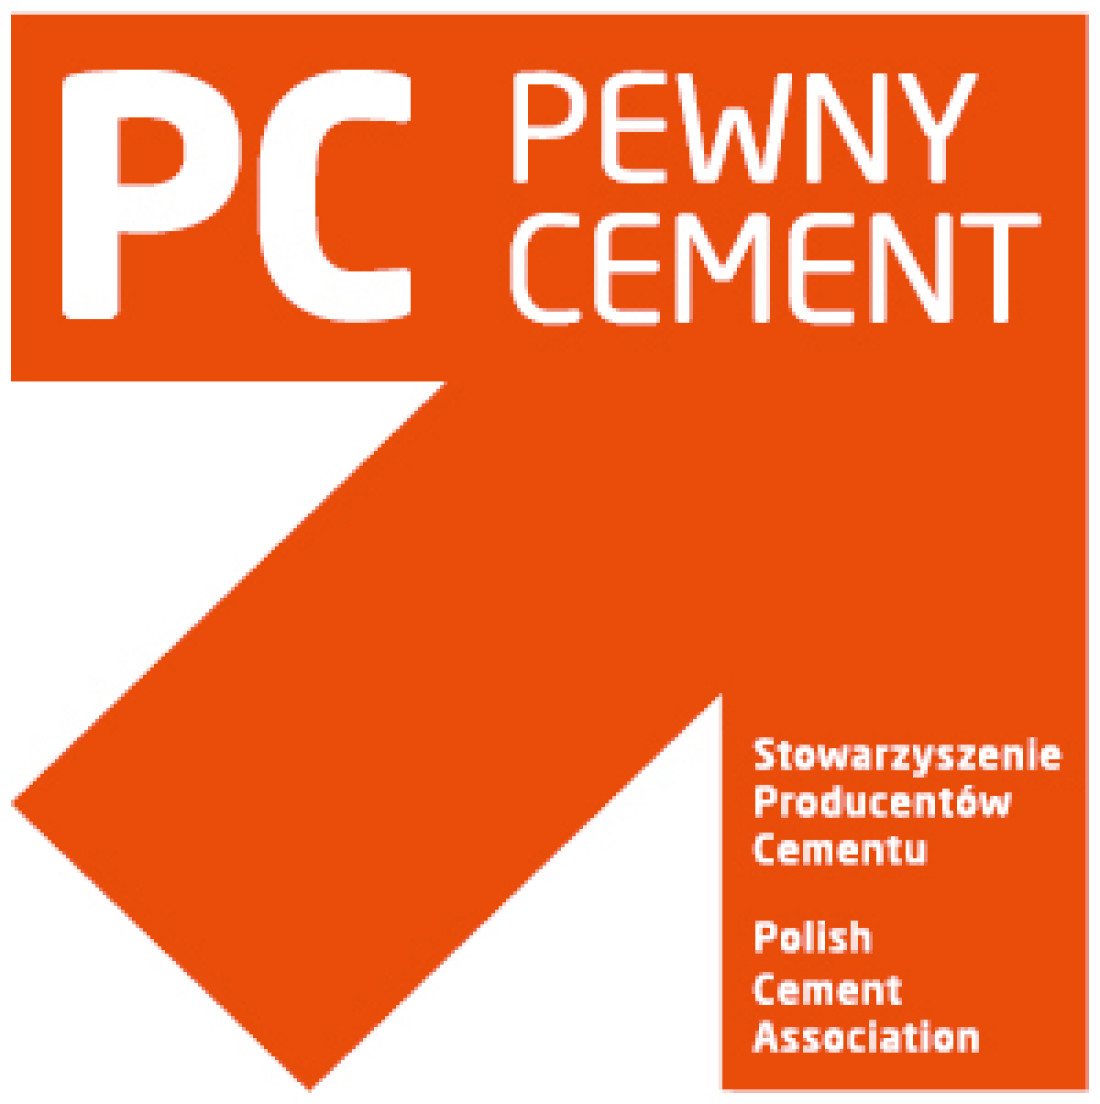 Produkty Górażdże Cement ze znakiem "Pewny Cement"